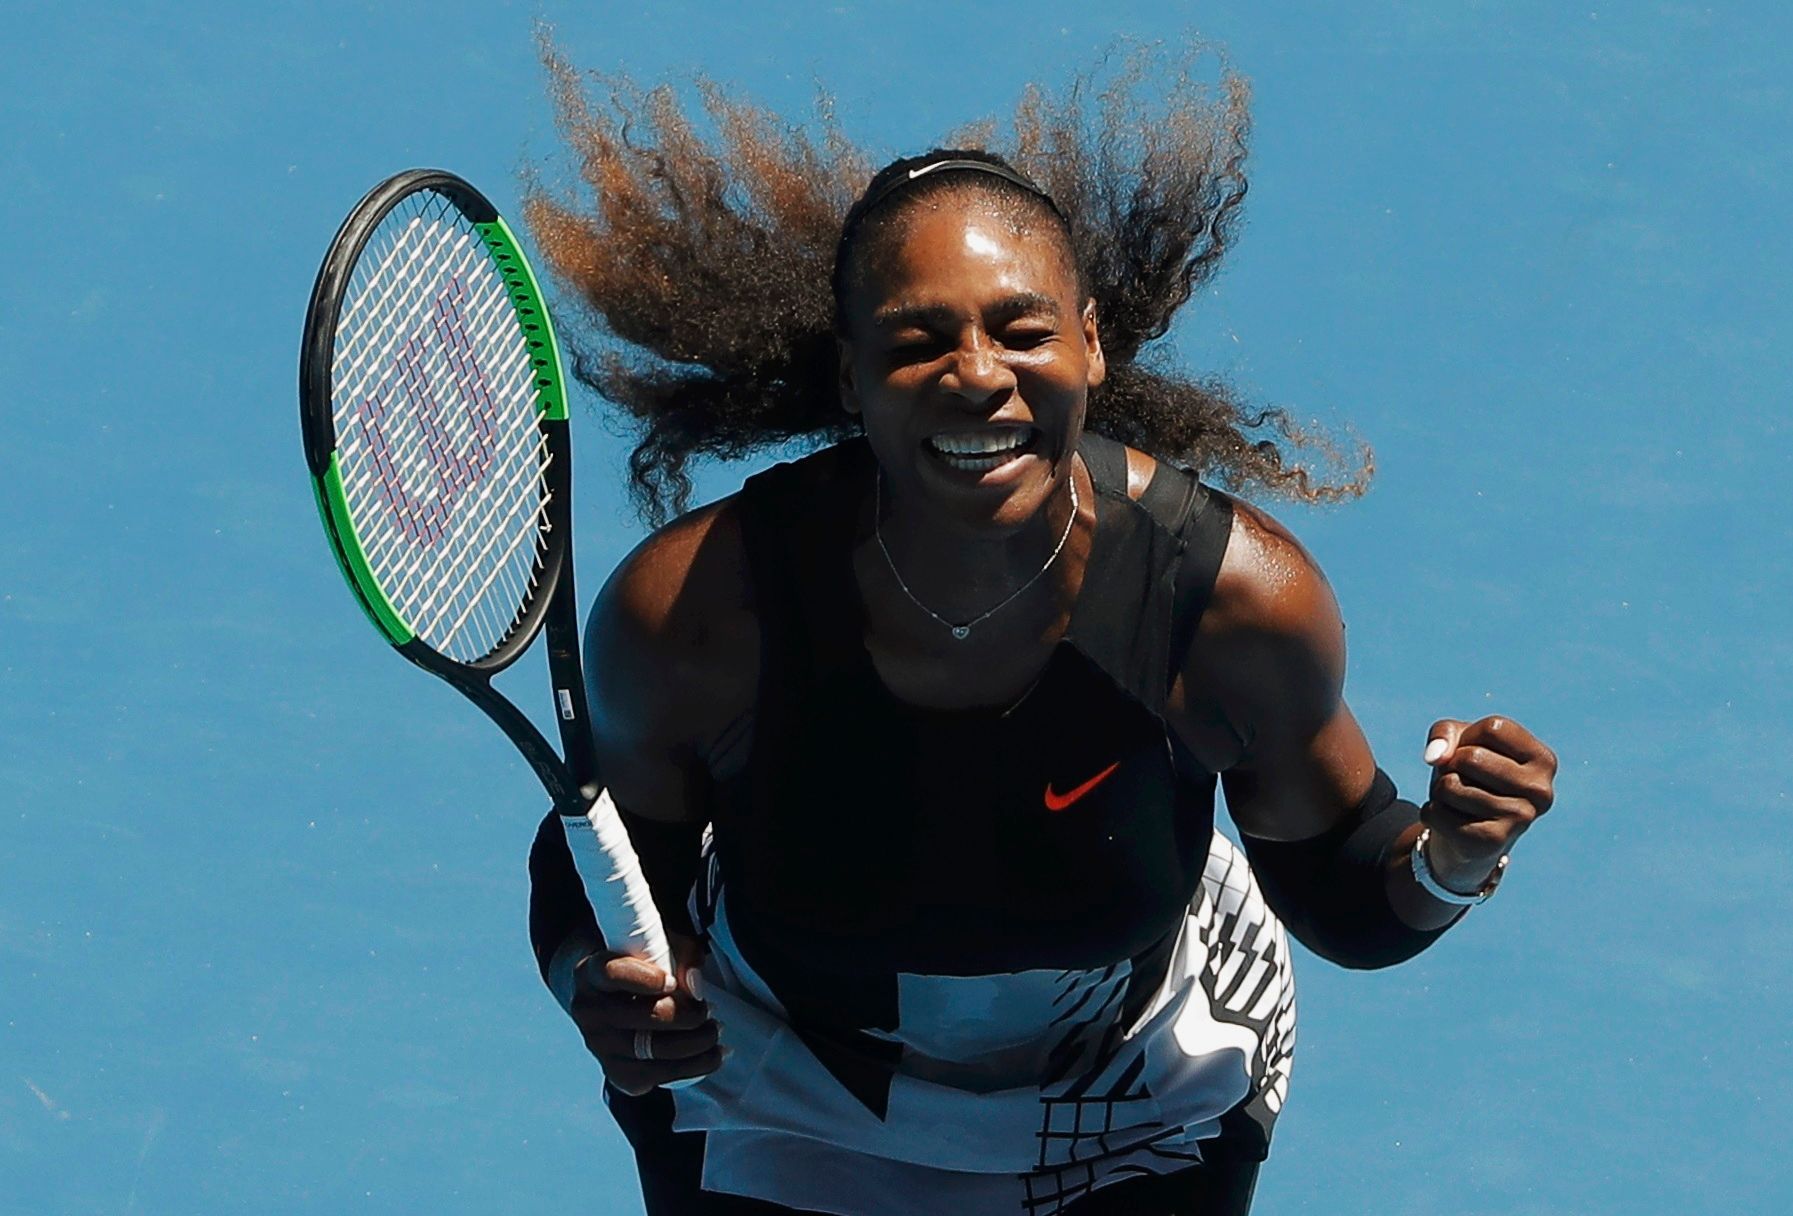 Serena Williamsová proti Johaně Kontaové ve čtvrtfinále Australian Open 2017